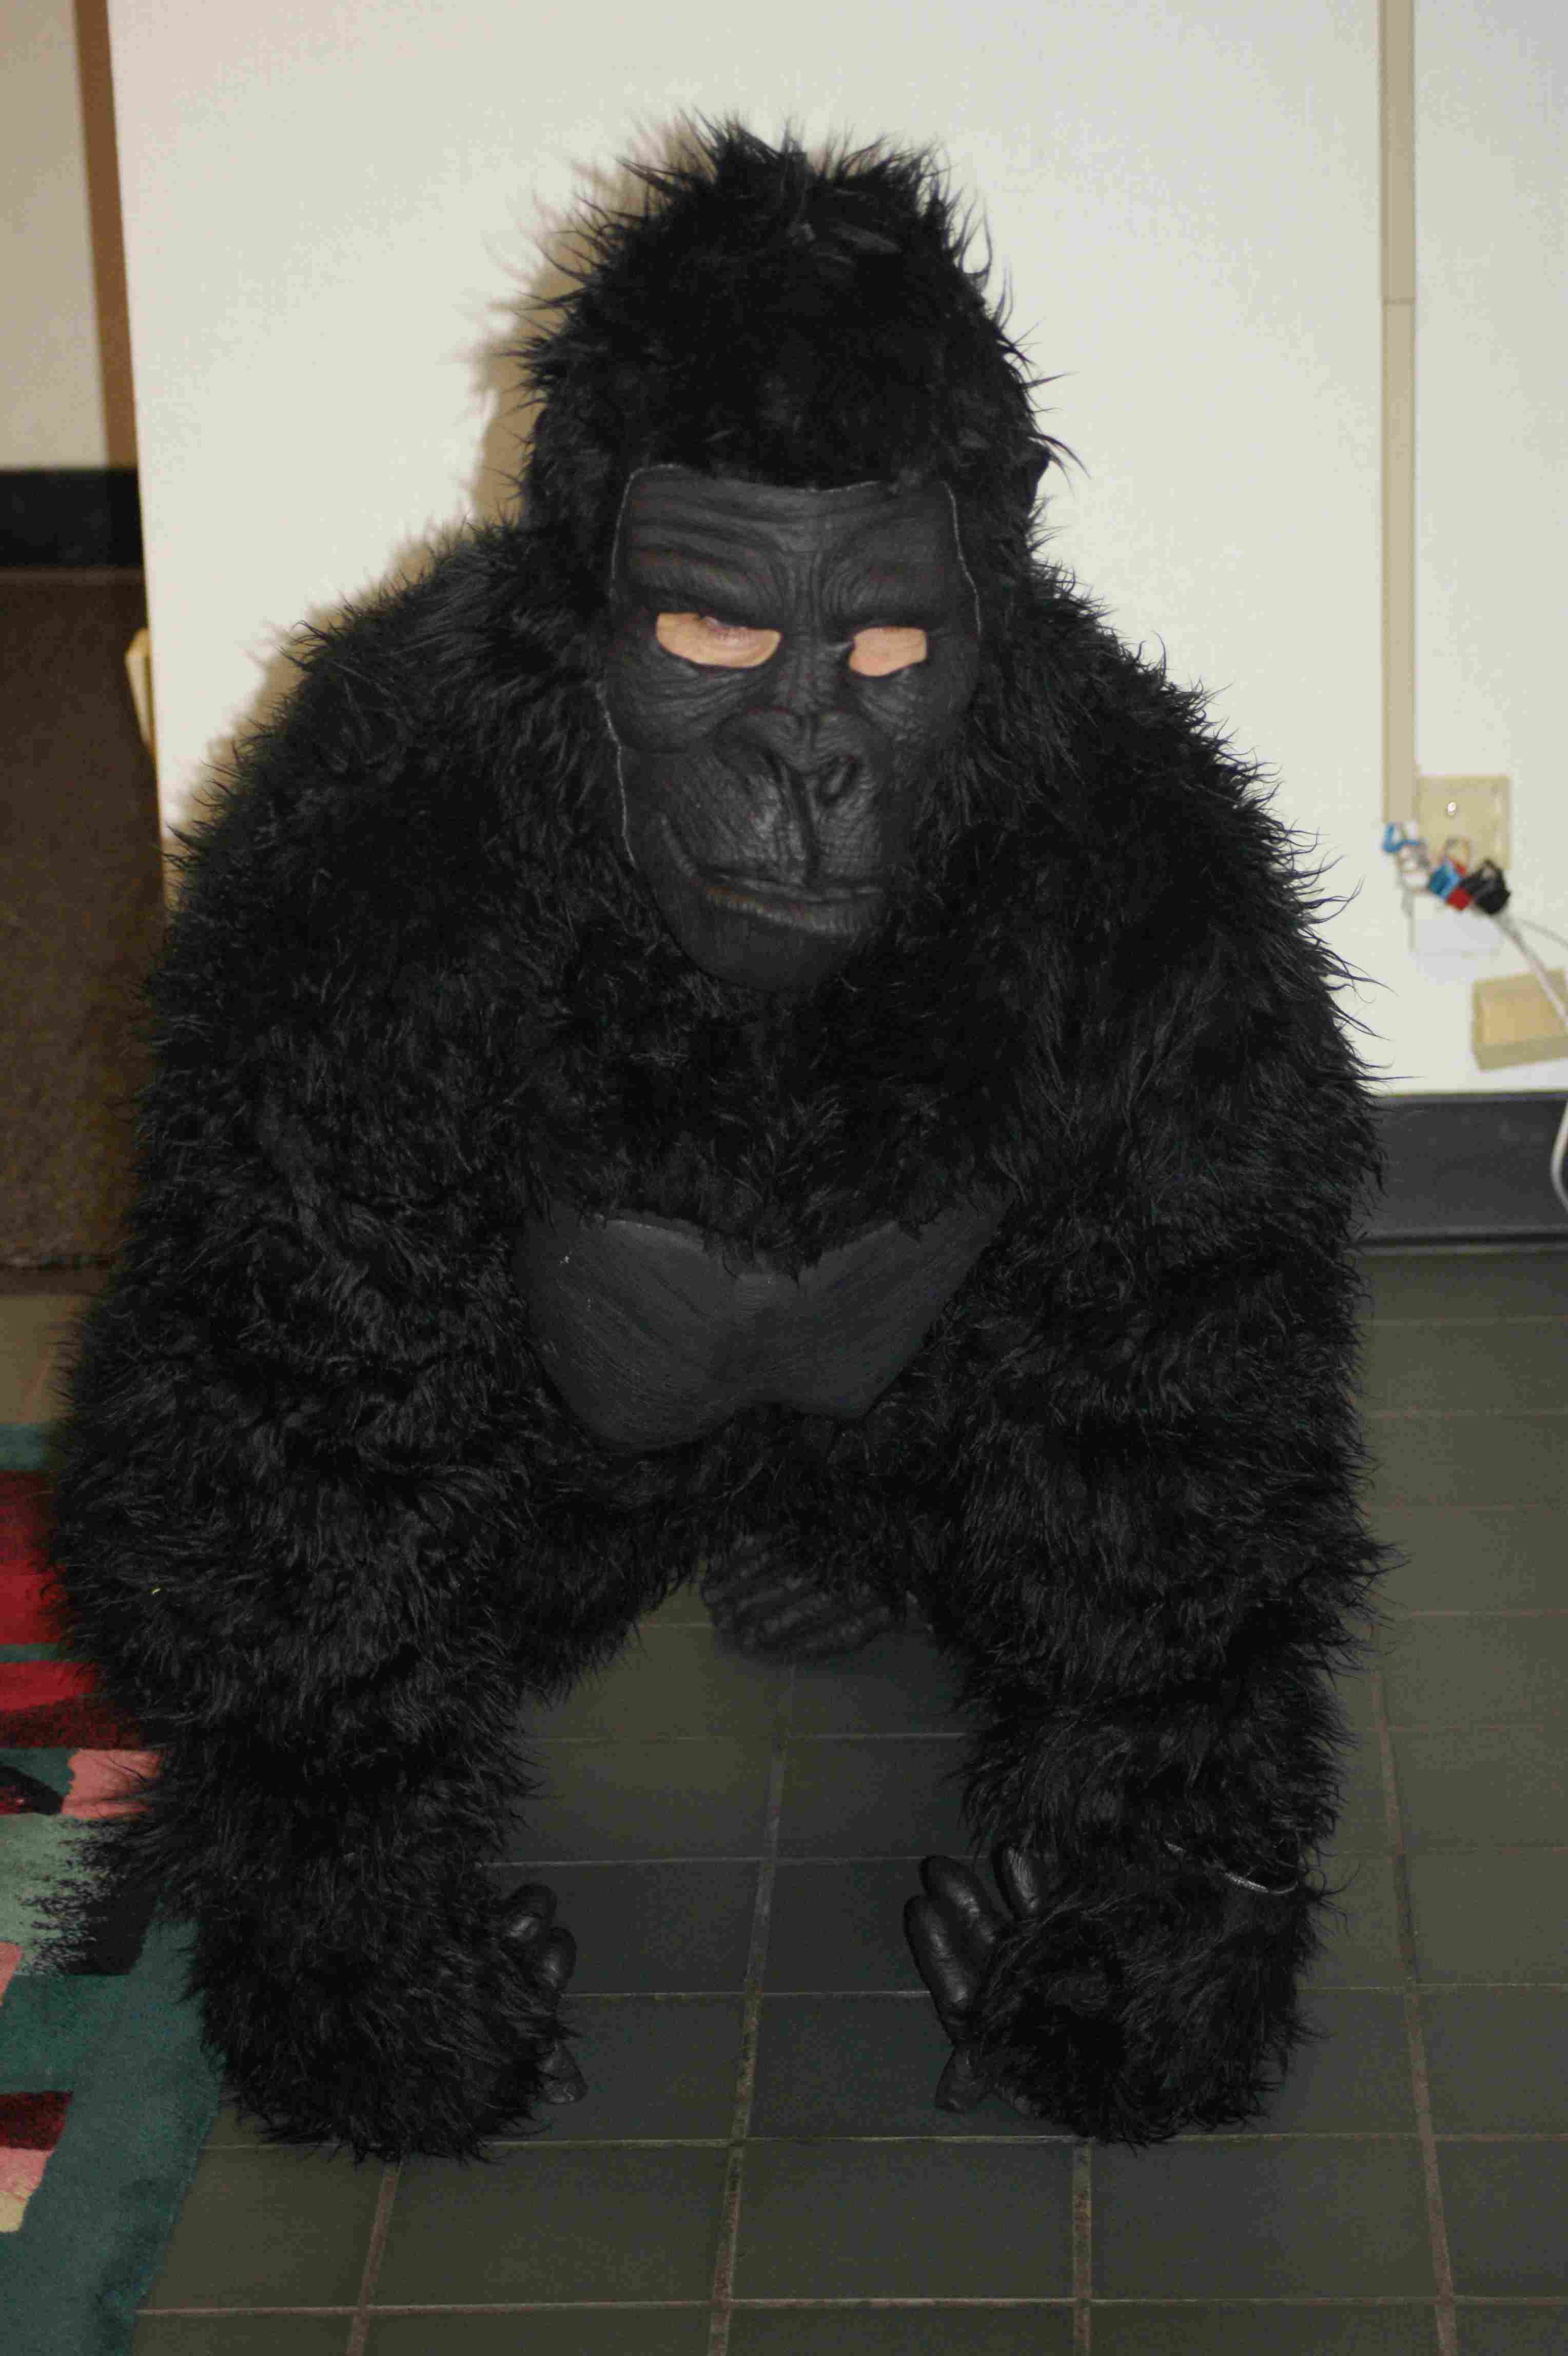 Gorilla Office Halloween Costume